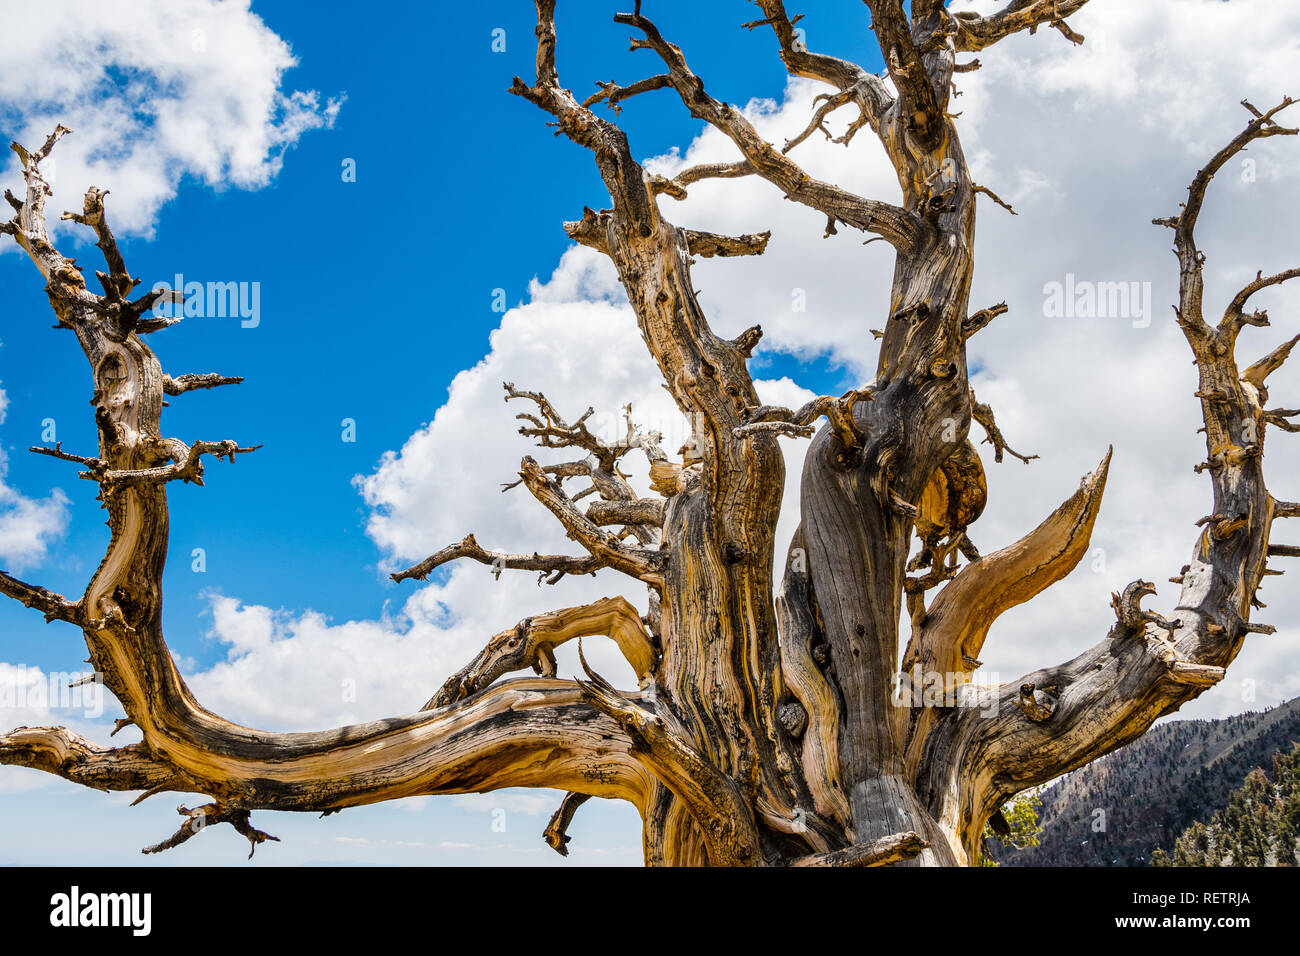 Muertos de pinos bristlecone (Pinus longaeva) sobre un blanco de nubes y el cielo azul de fondo, el Parque Nacional Valle de la Muerte, California Foto de stock